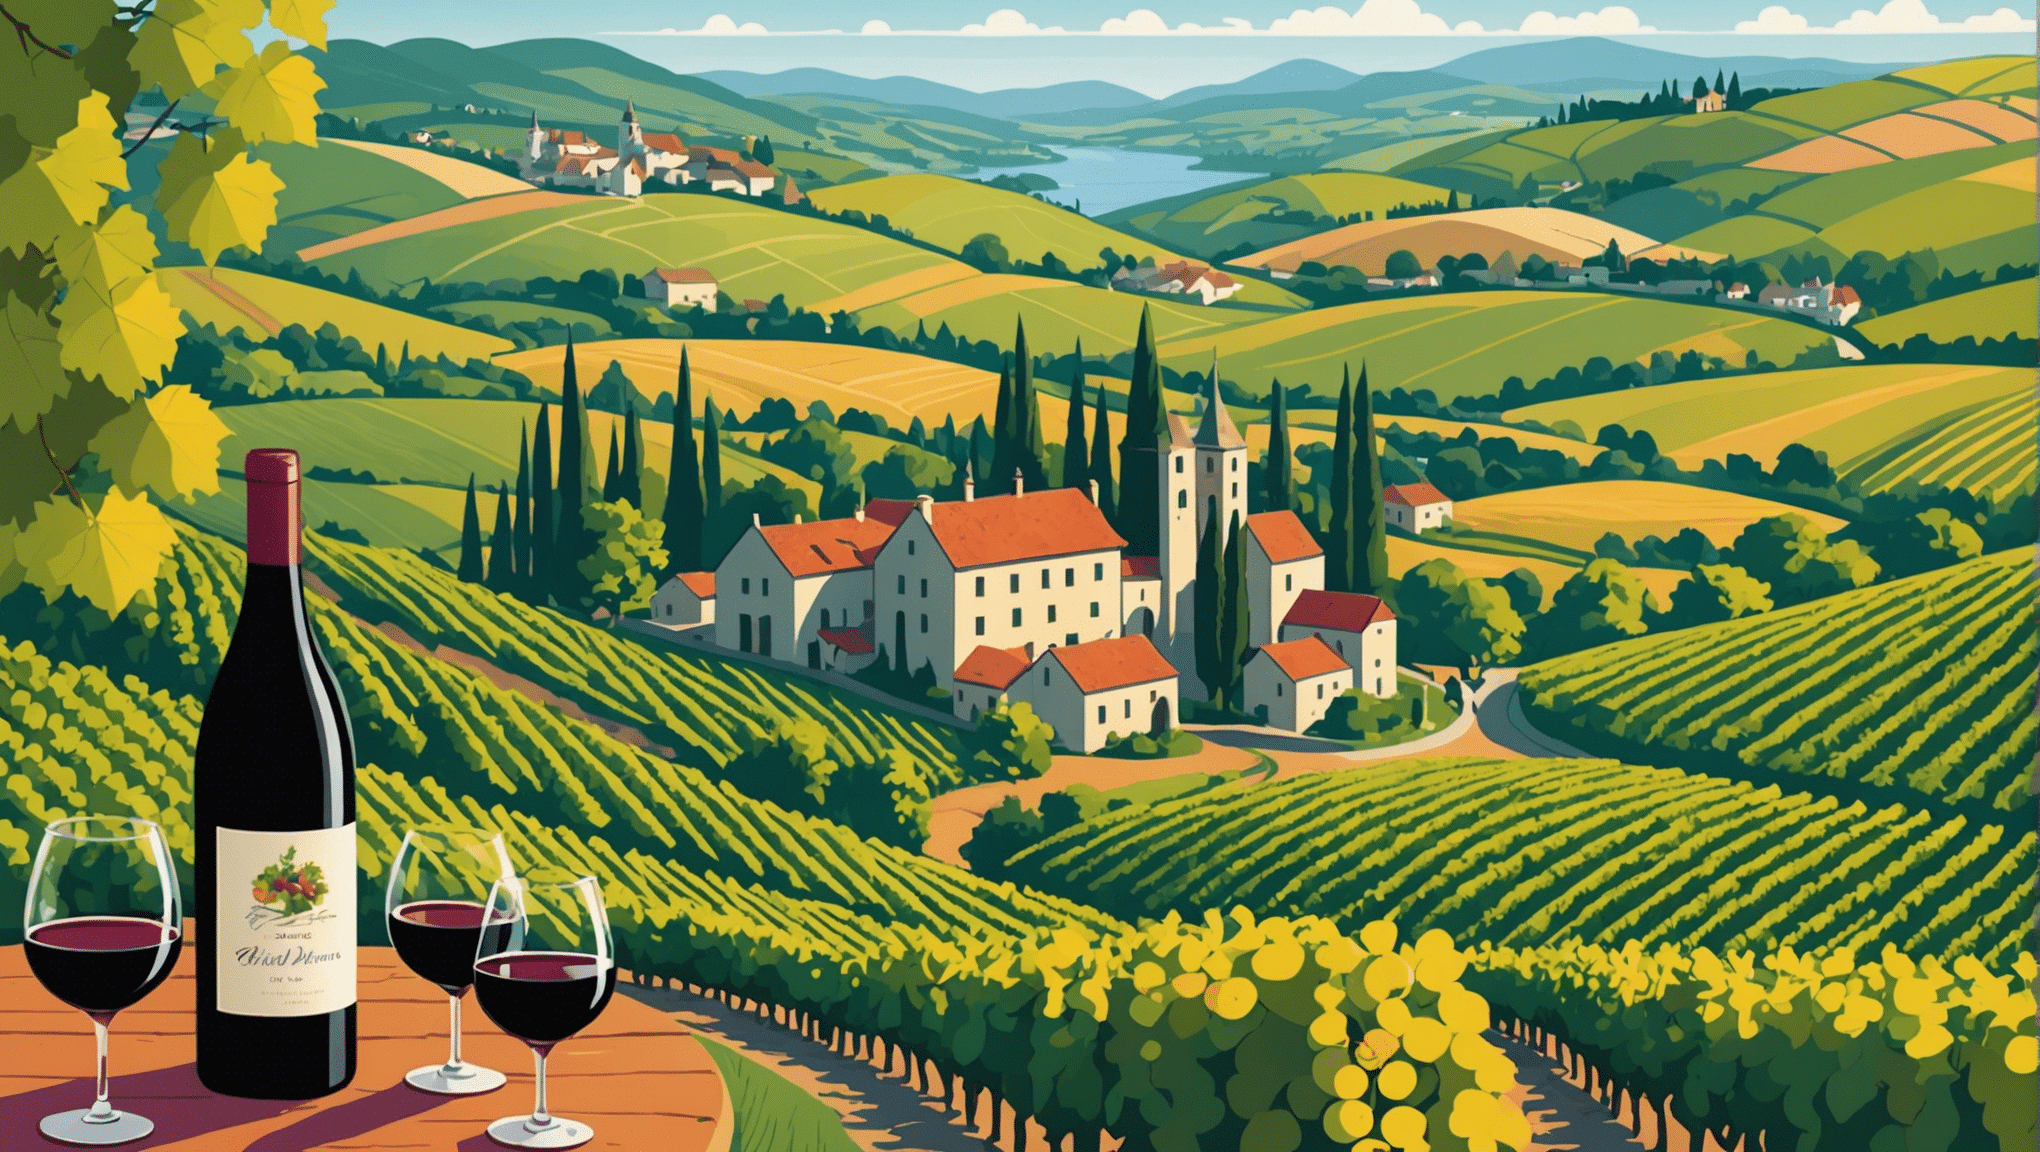 探索葡萄酒之路上最美丽的路线。在您的葡萄酒之旅中享受迷人的风景和难忘的品尝。